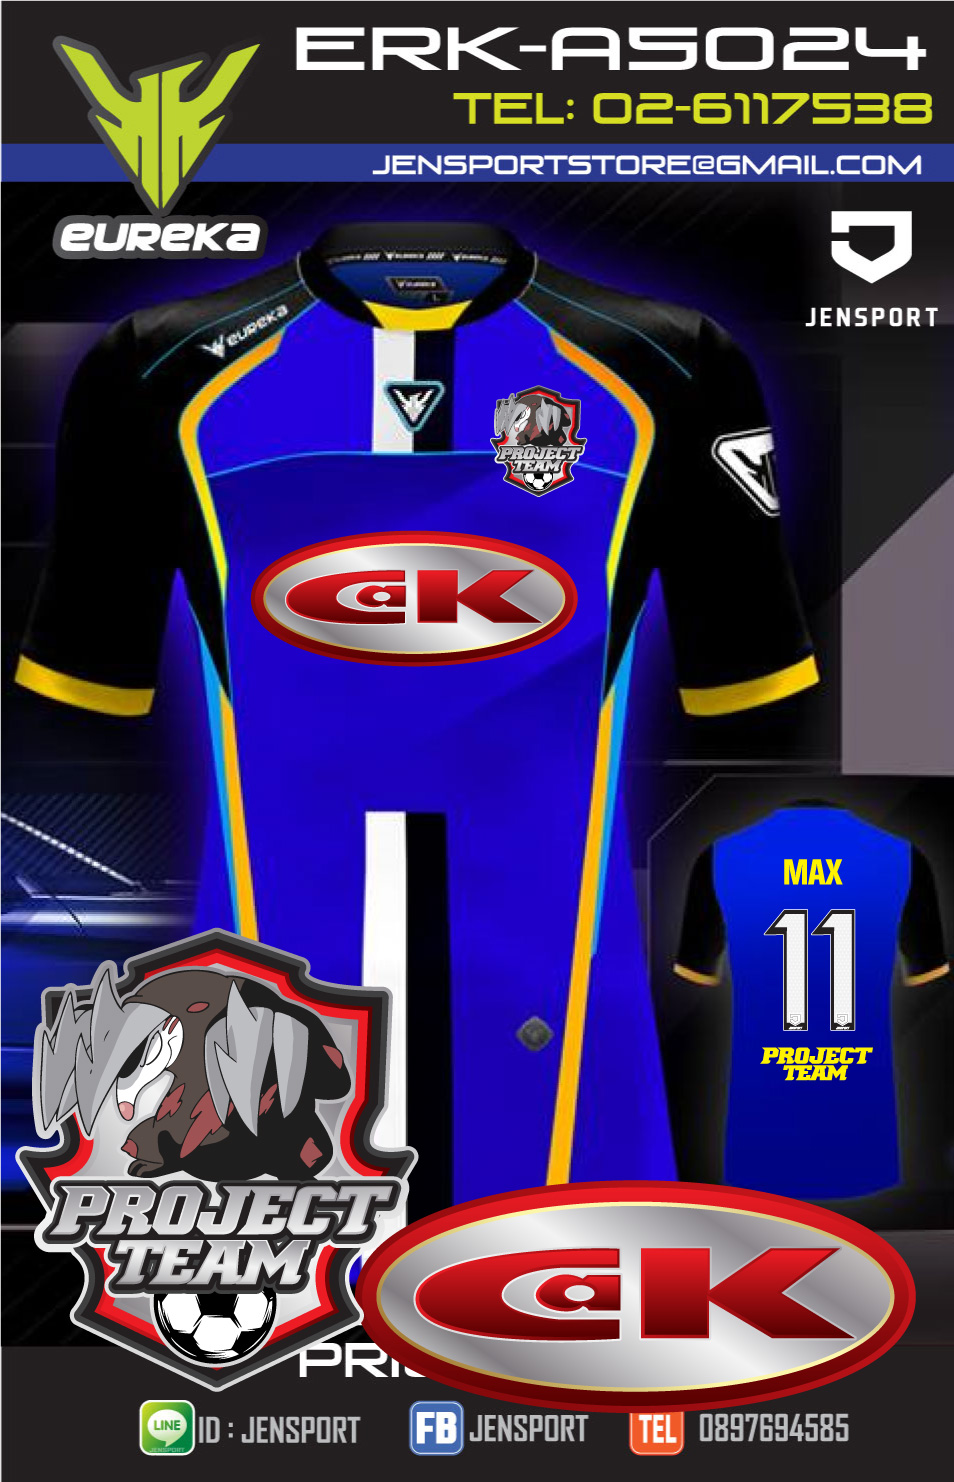 ​เสื้อฟุตบอล EUREKA ERK-A5024 สีน้พเงิน ทีม Project team-CAK